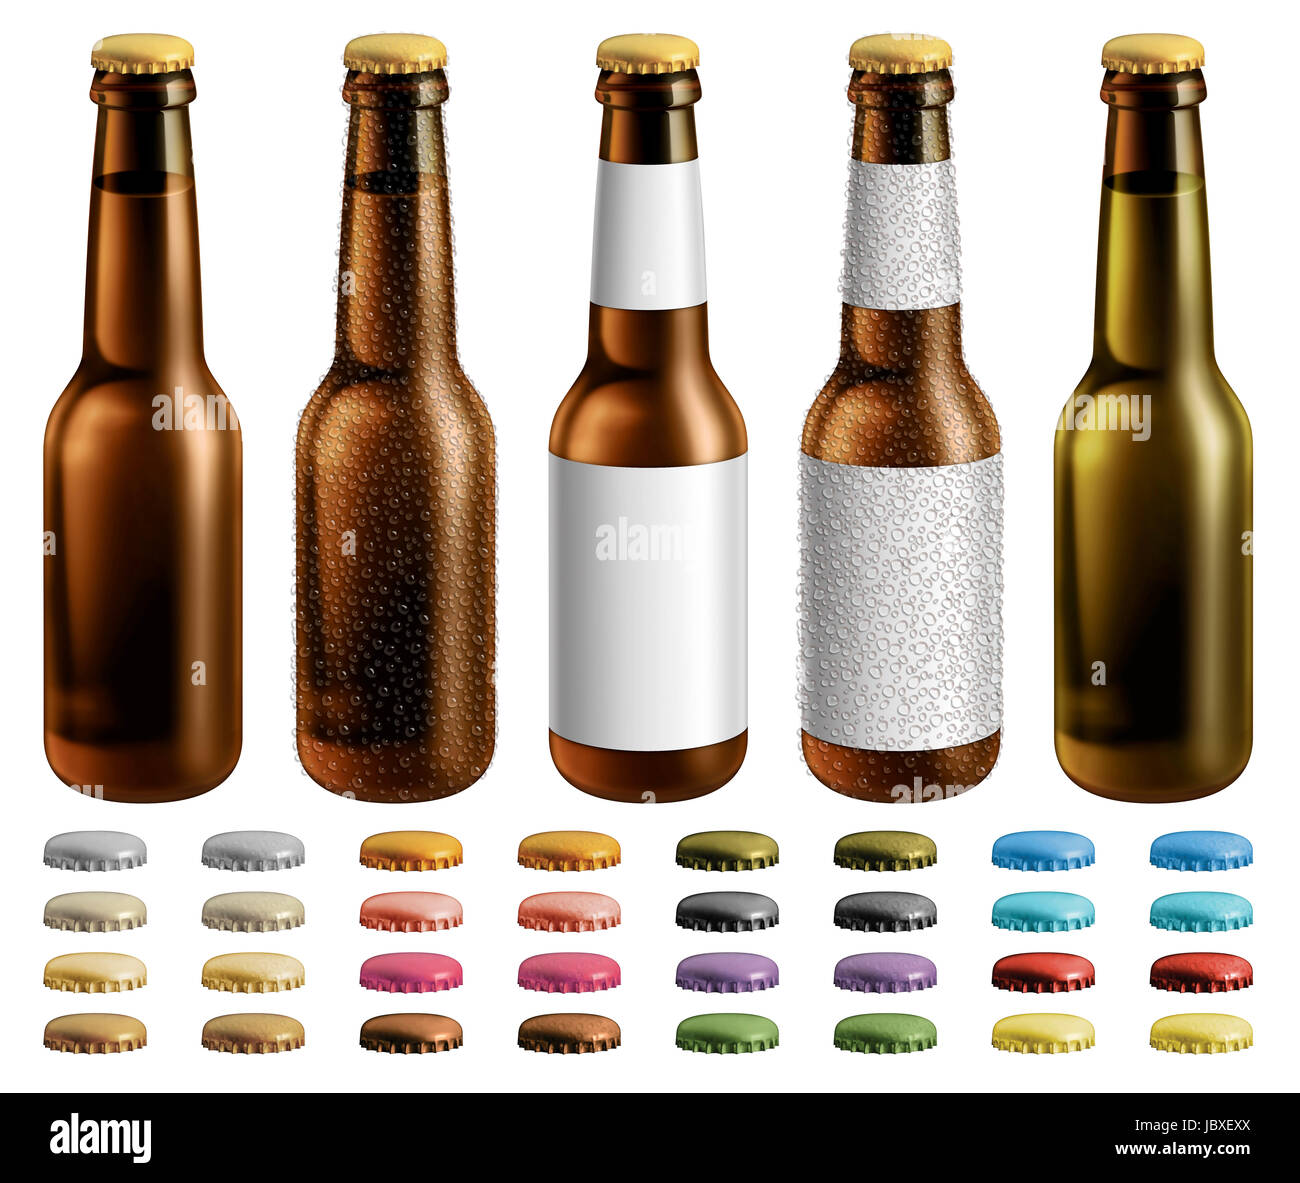 Ilustración digital de las botellas de cerveza con y sin etiquetas en  blanco y gotas de condensación. Se incluyen tapas opcionales adicionales  Fotografía de stock - Alamy